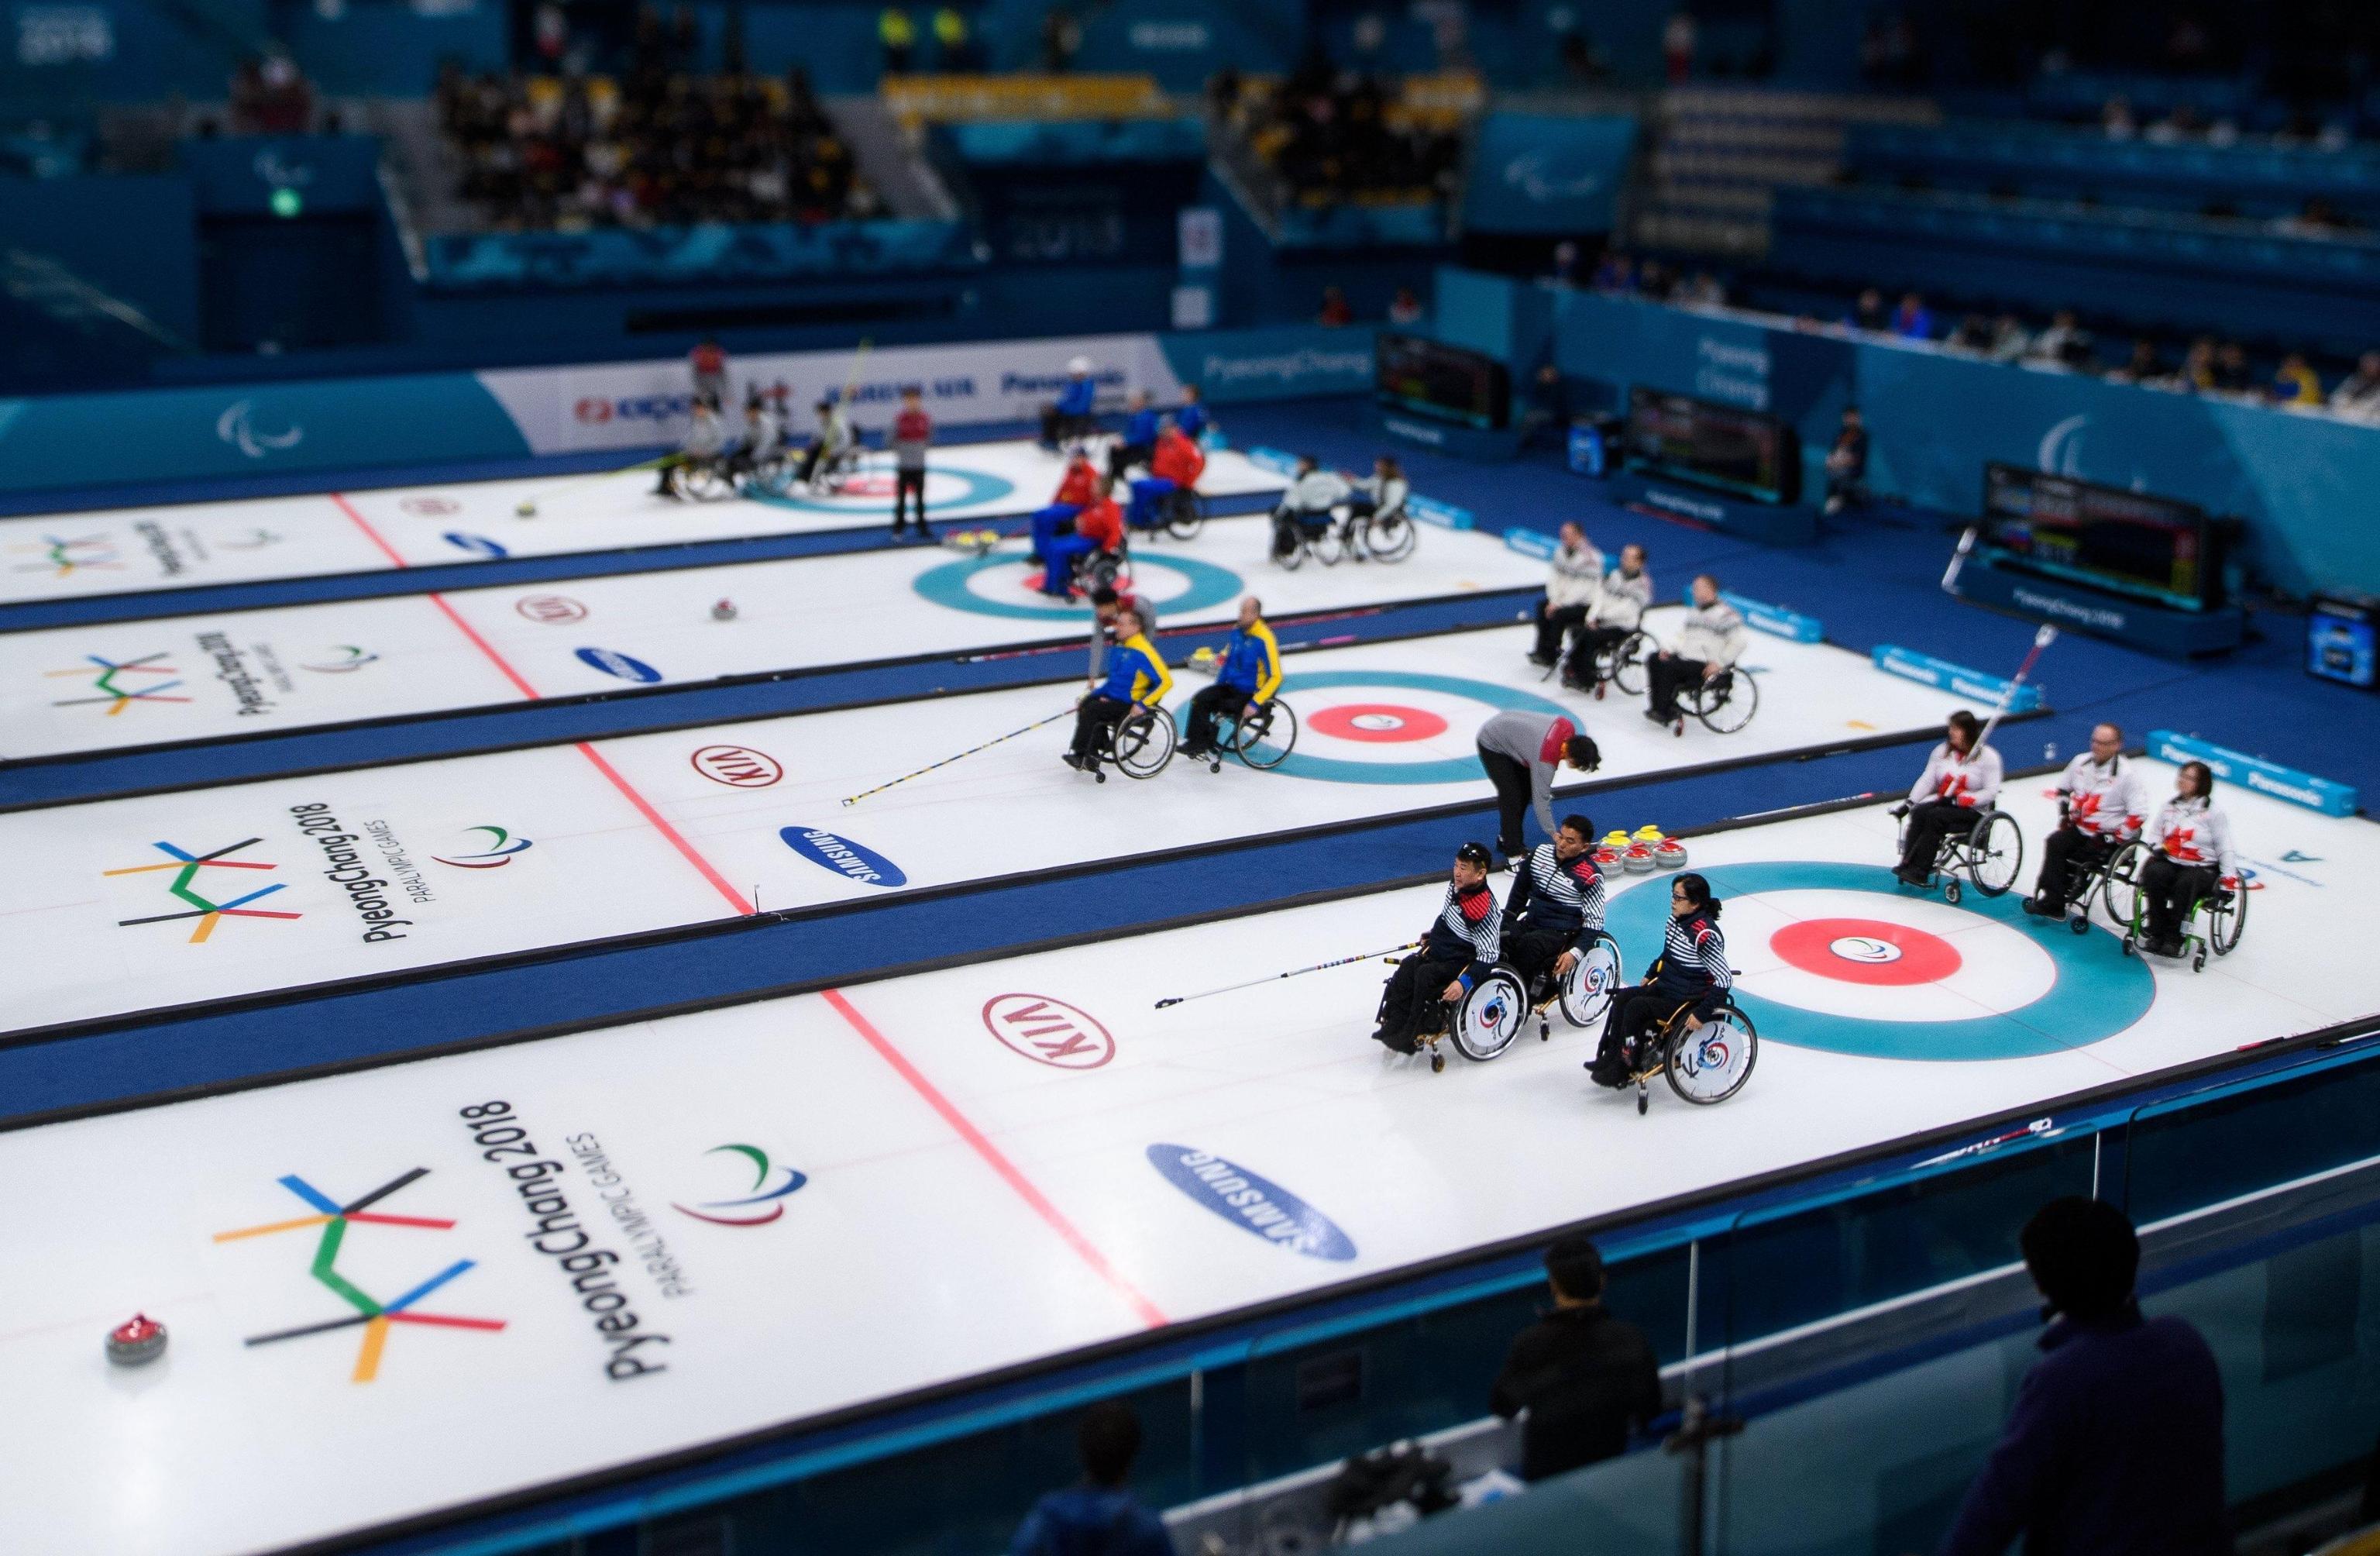 Panoramica della gara di Curling su sedia a rotelle nel Gangneung Curling Centre